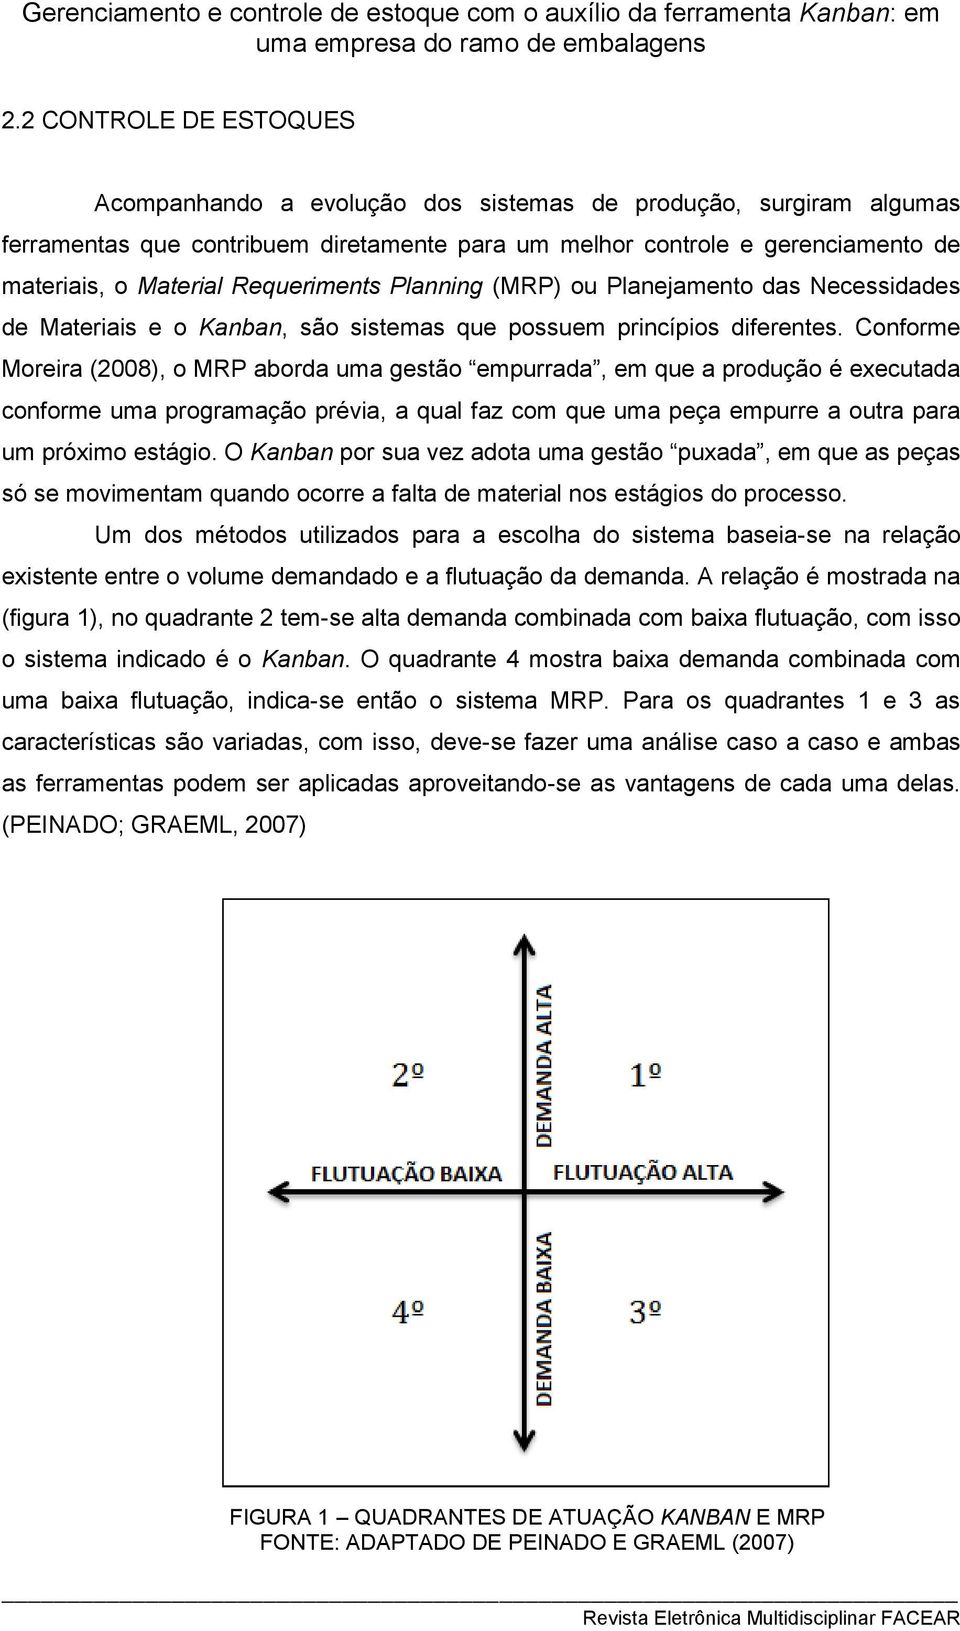 Conforme Moreira (2008), o MRP aborda uma gestão empurrada, em que a produção é executada conforme uma programação prévia, a qual faz com que uma peça empurre a outra para um próximo estágio.